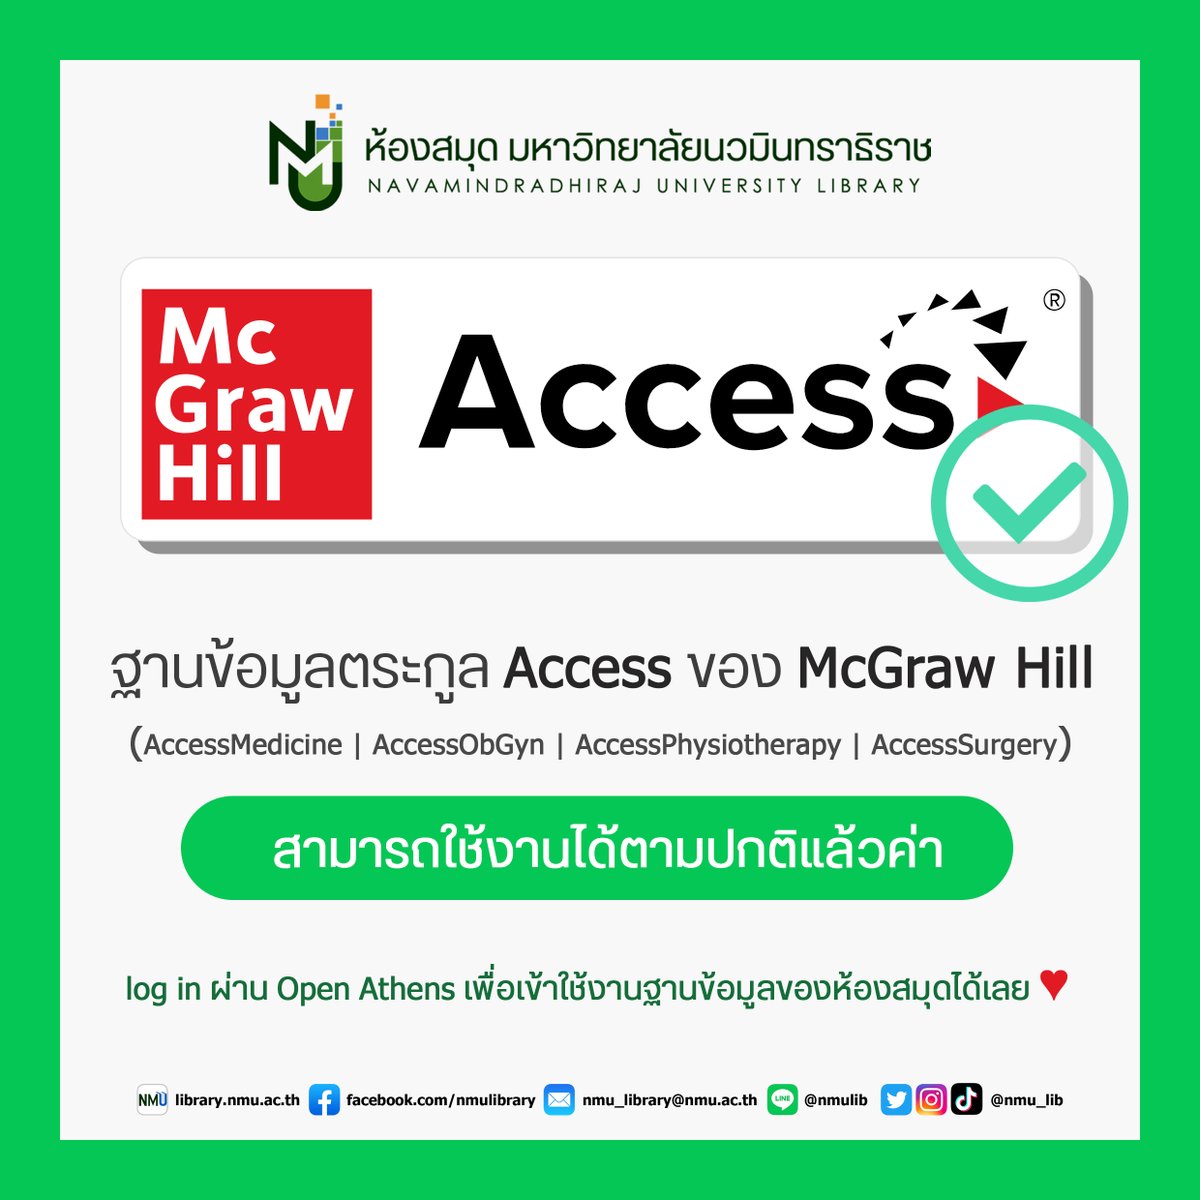 📢ประกาศ📢 ขณะนี้ฐานข้อมูลตระกูล Access ของ McGraw Hill
✅สามารถใช้งานได้ตามปกติแล้วค่าาา ✅
- AccessMedicine
- AccessObGyn
- AccessPhysiotheraphy
- AccessSurgery
#NMUlibrary #มหาลัยนวมินทราธิราช